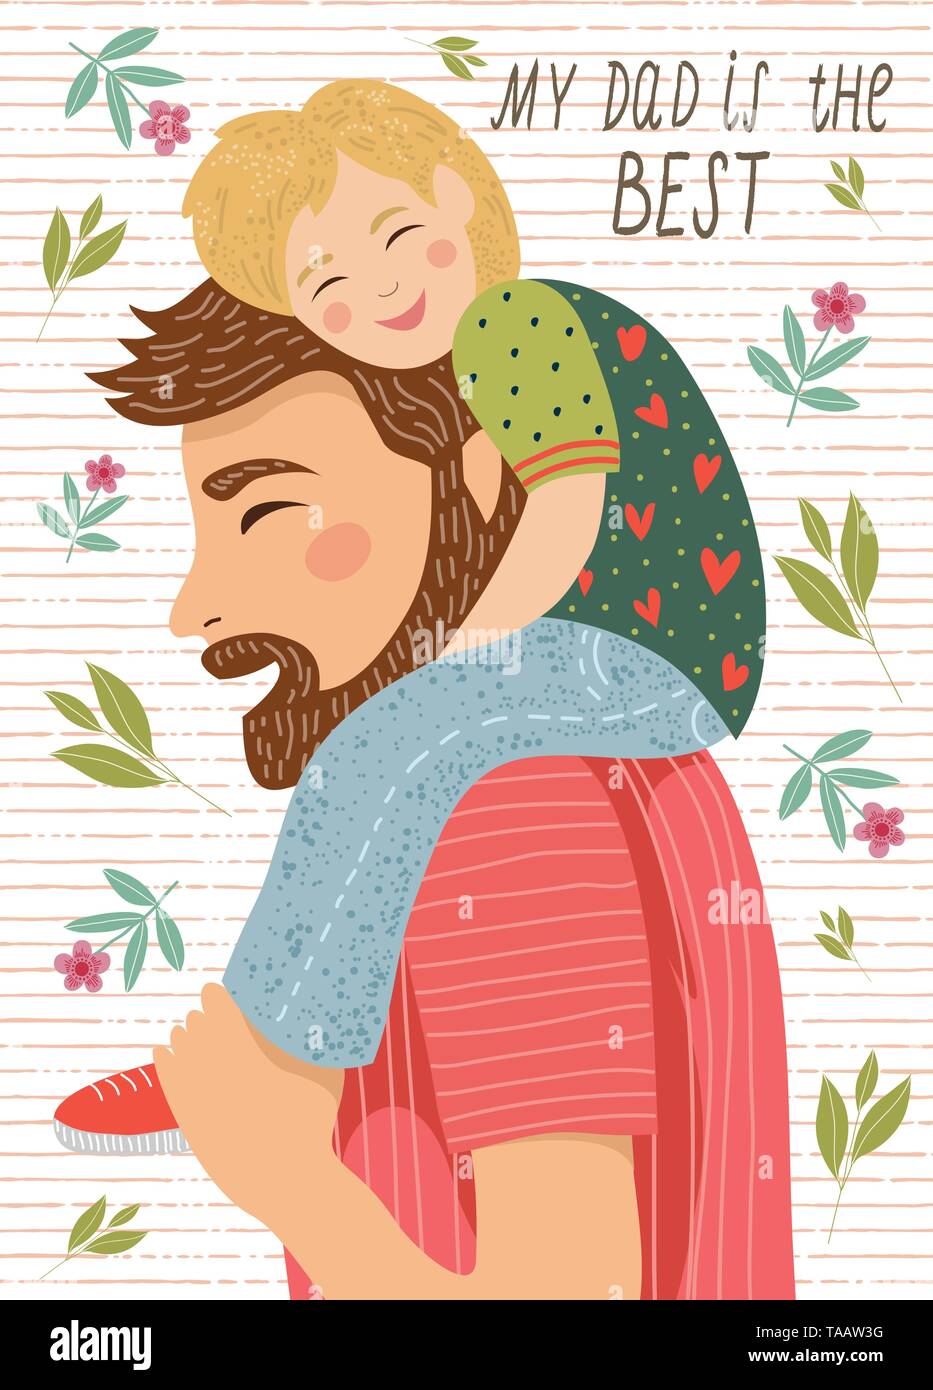 Dessin à la main de mon père et l'enfant assis sur ses épaules sur un fond blanc avec des fleurs et des feuilles Illustration de Vecteur